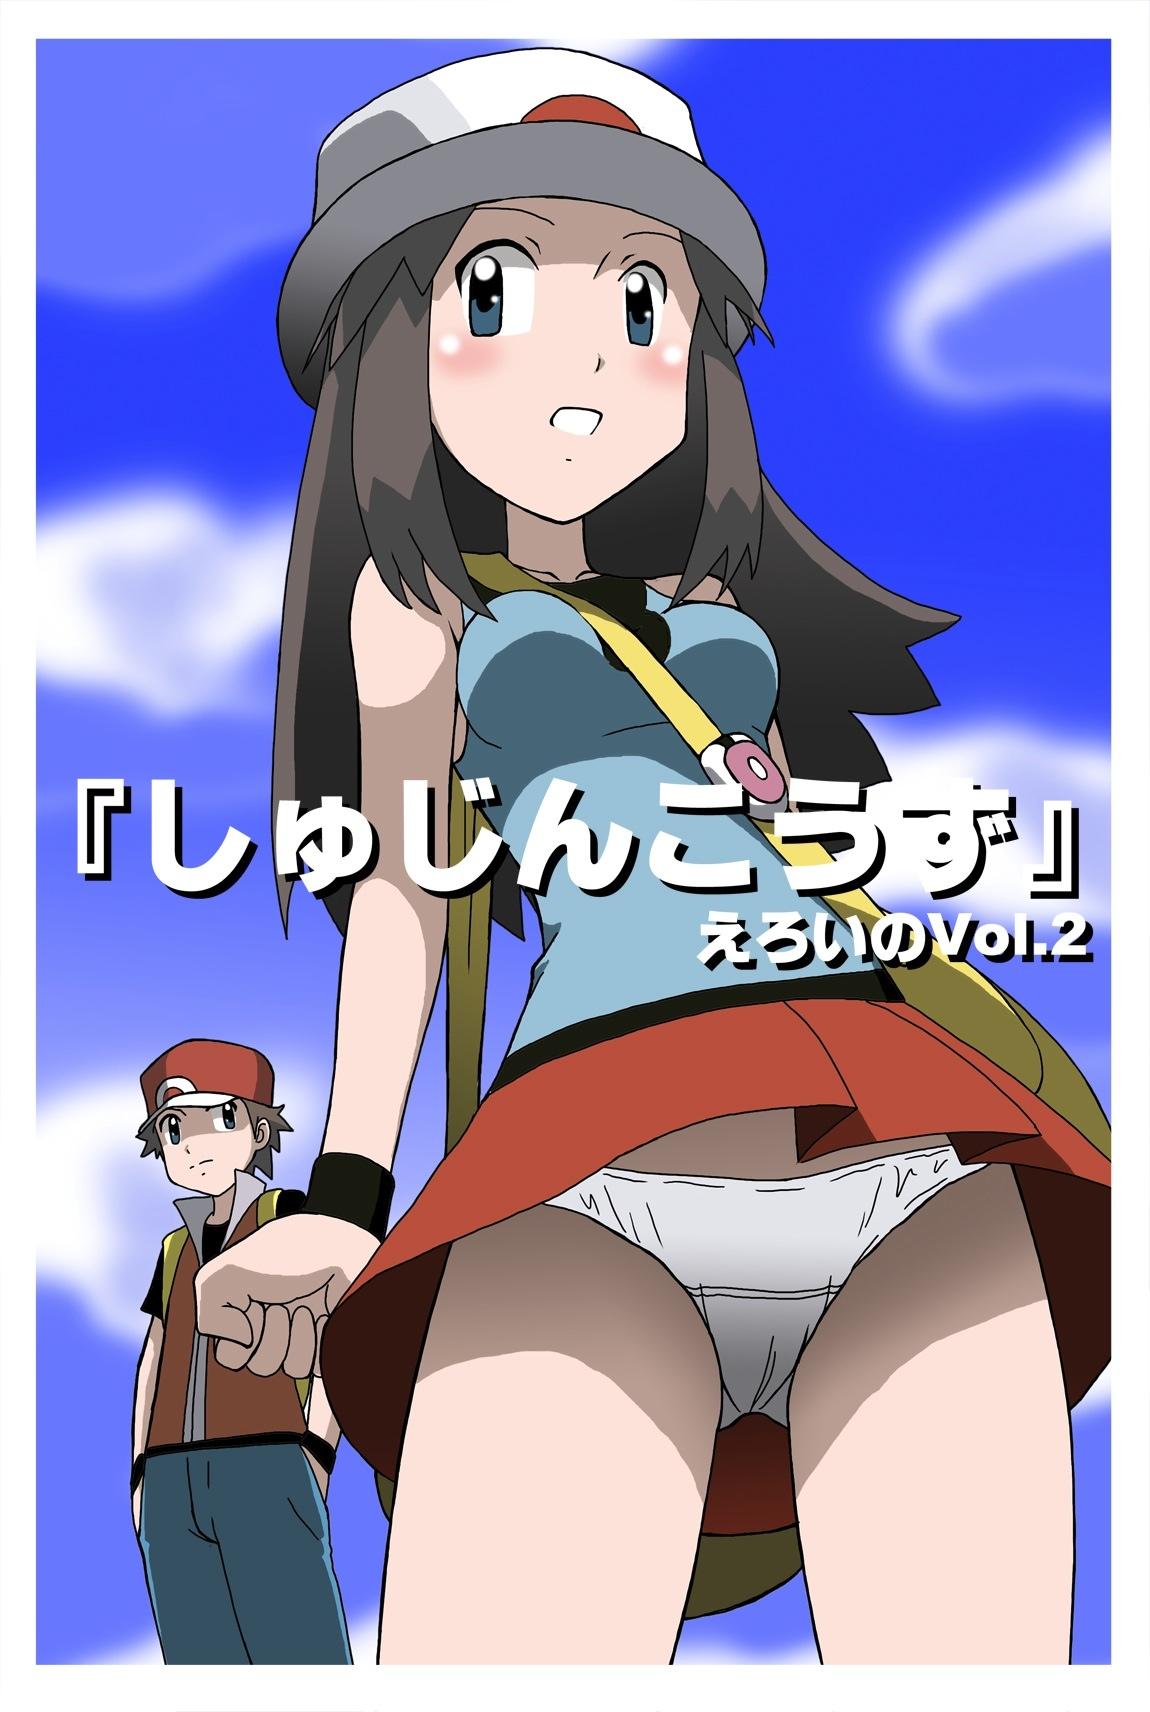 Exgirlfriend 「Shujinkouzu」 Eroi no Vol.2 - Pokemon Speculum - Picture 1